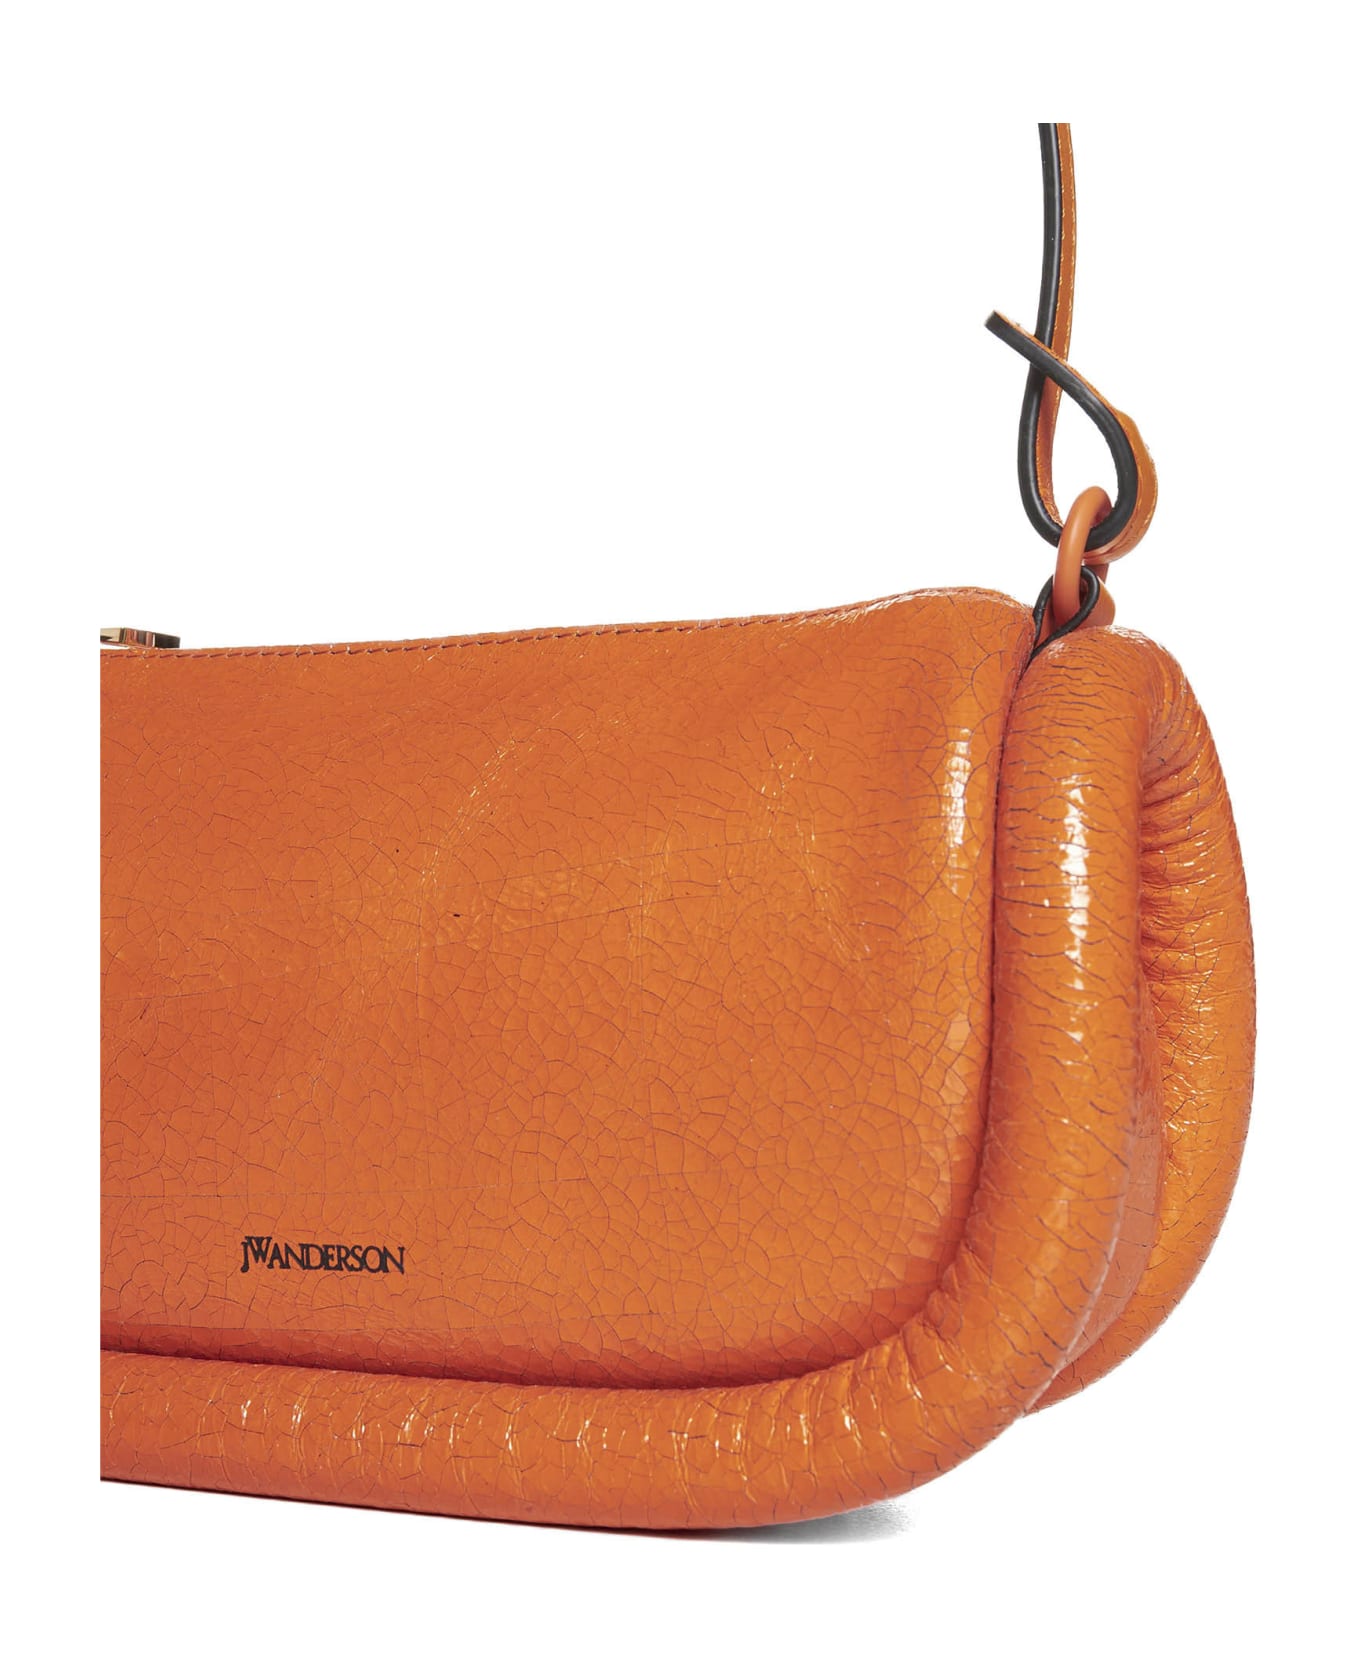 J.W. Anderson Shoulder Bag - Neon orange